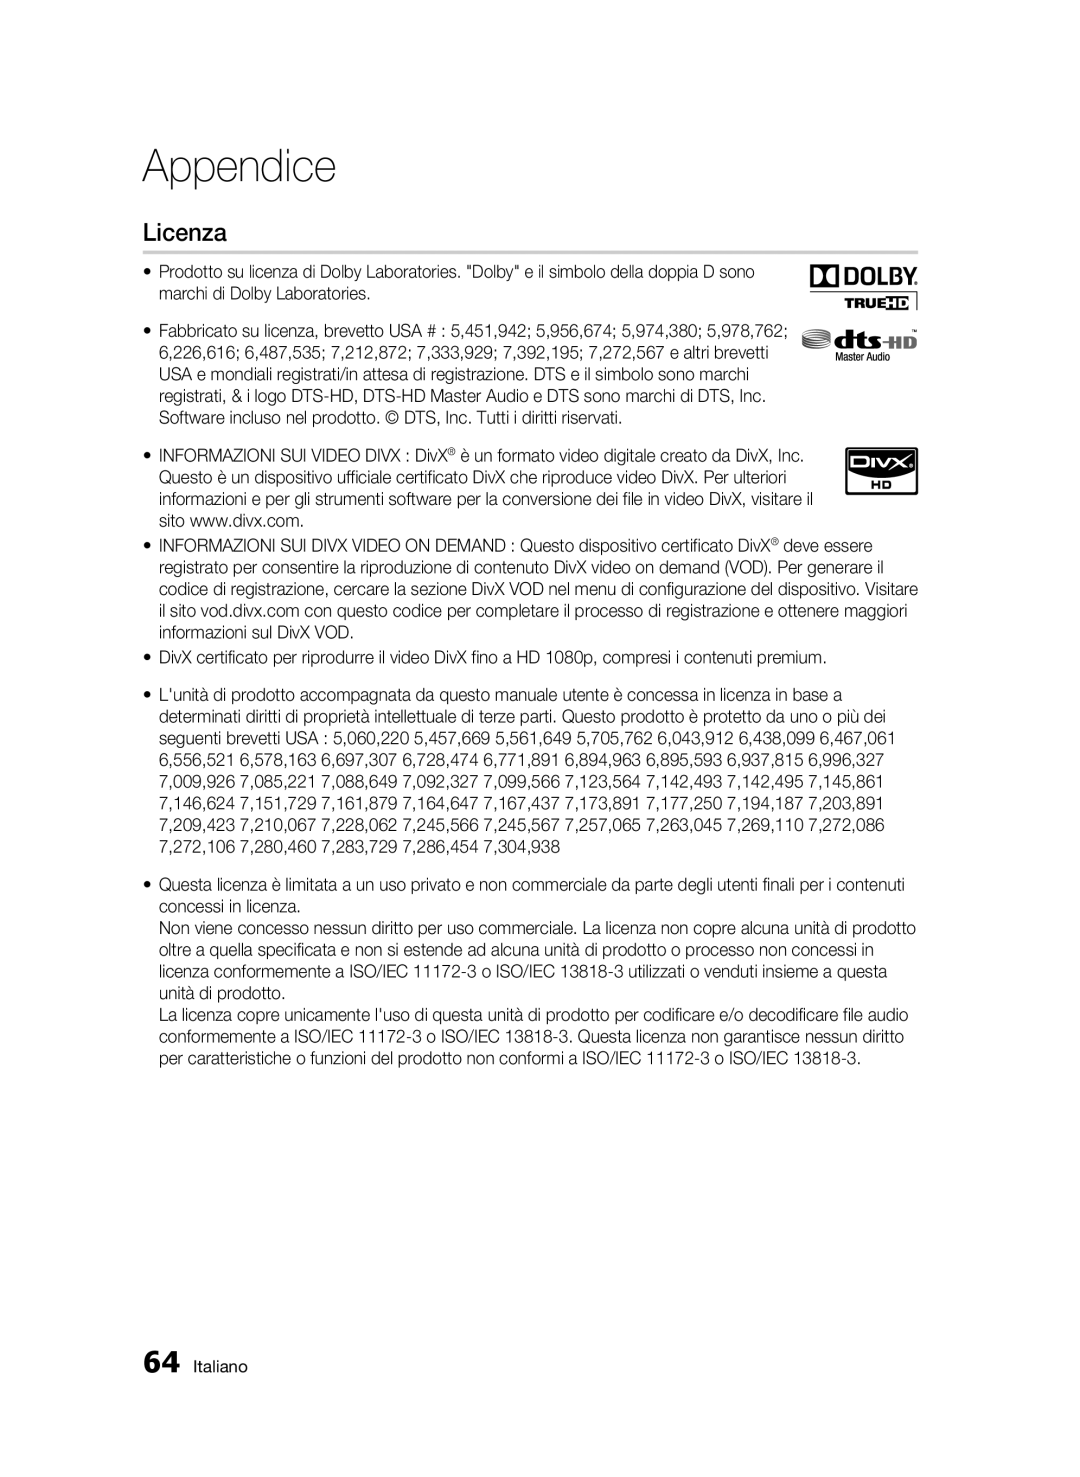 Samsung BD-C6500/XEF manual Licenza, Appendice, Italiano 